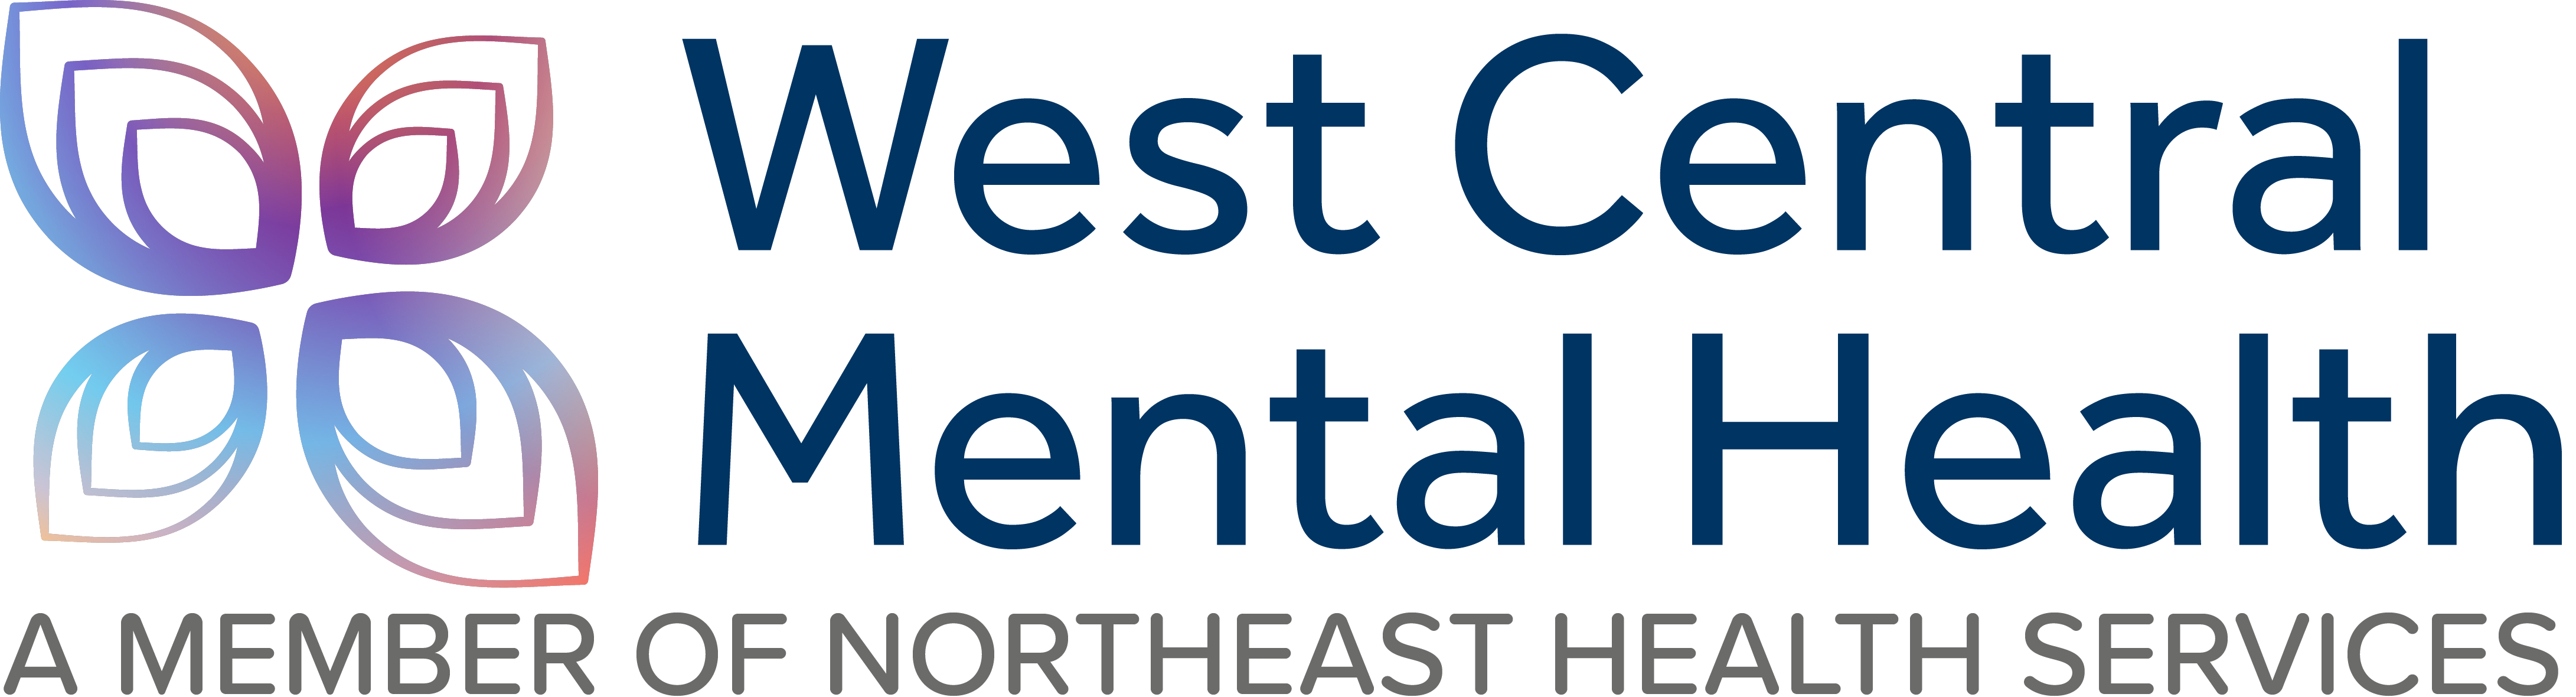 West Central Mental Health logo